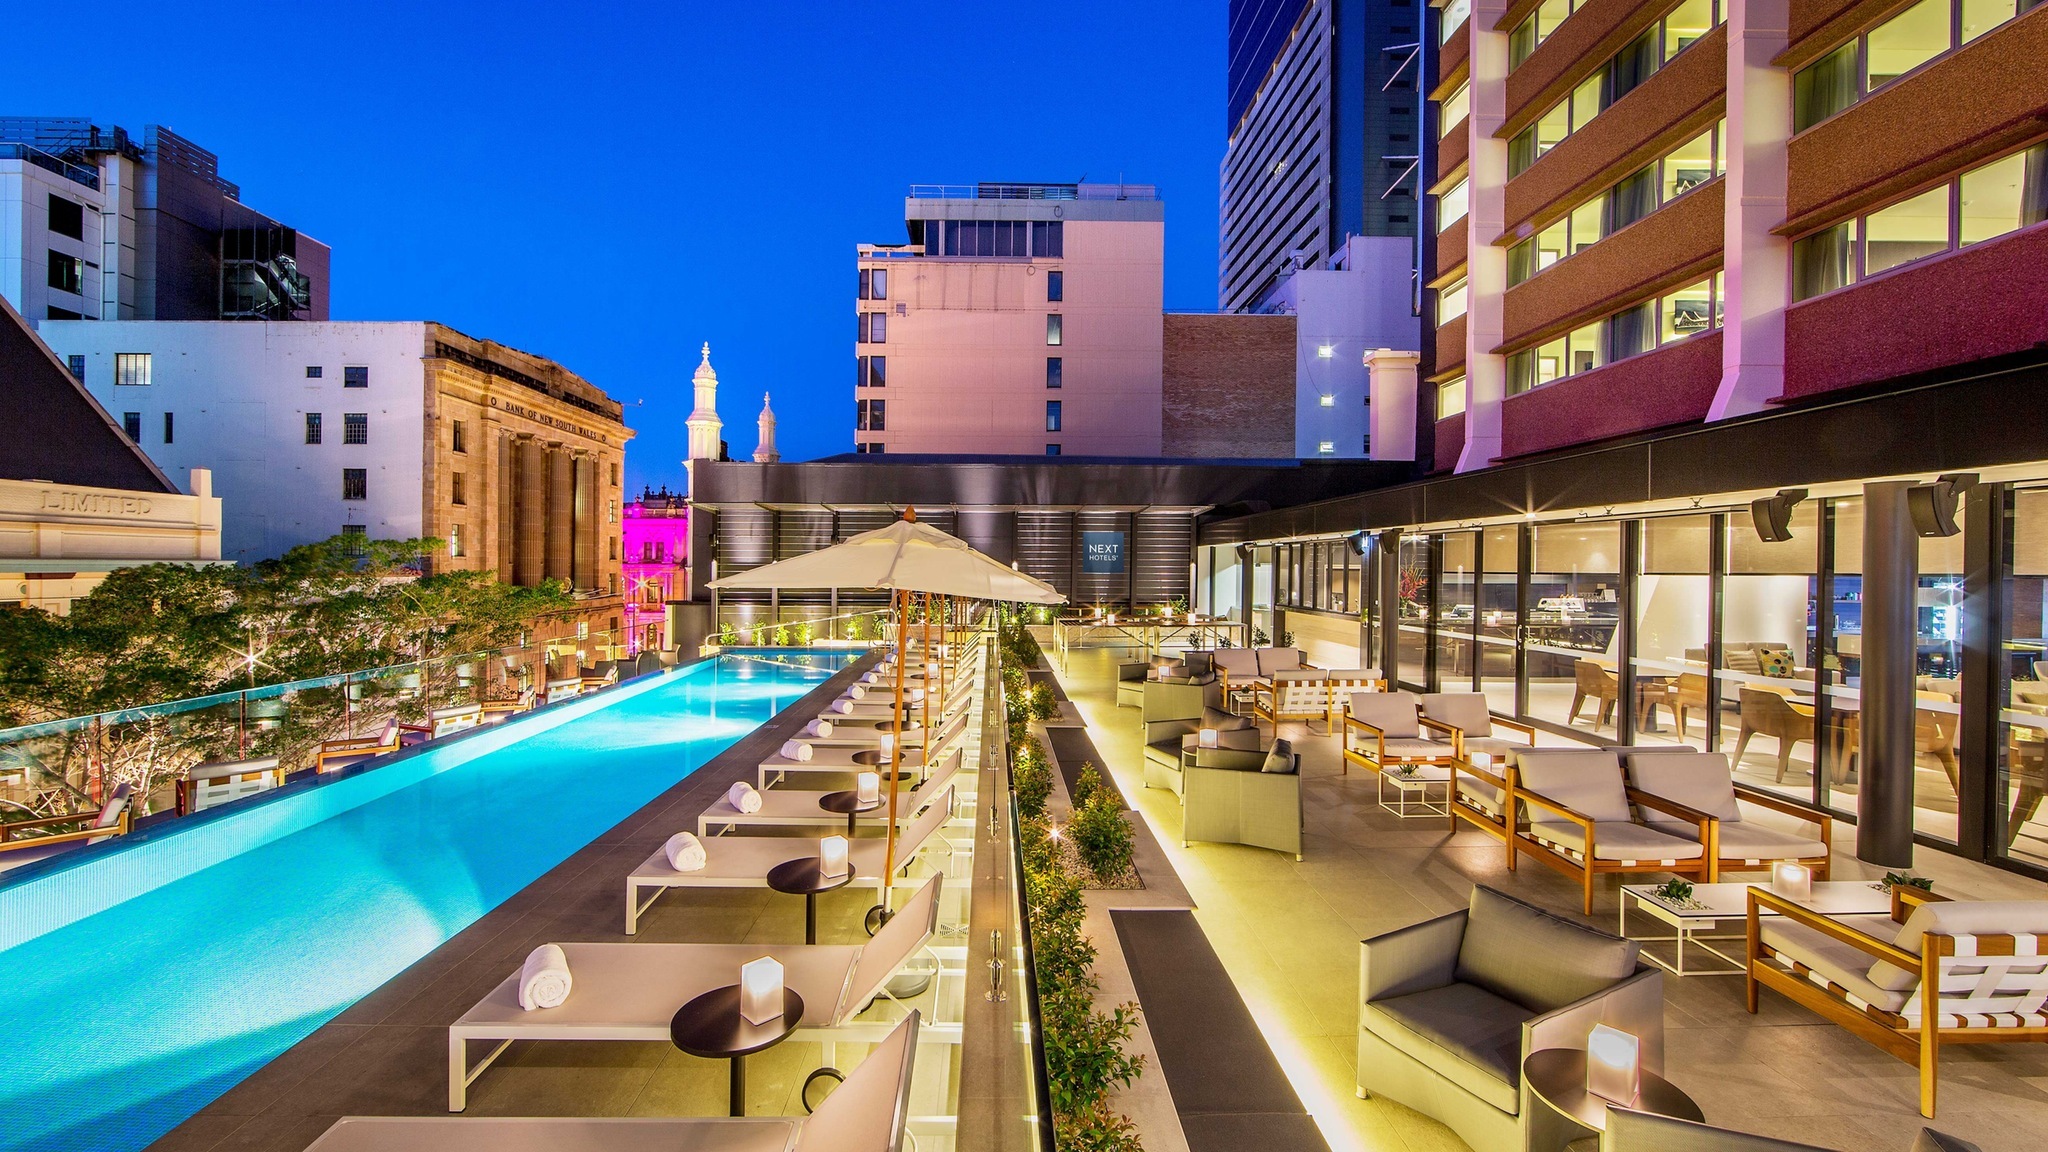 7 Best Brisbane Hotels